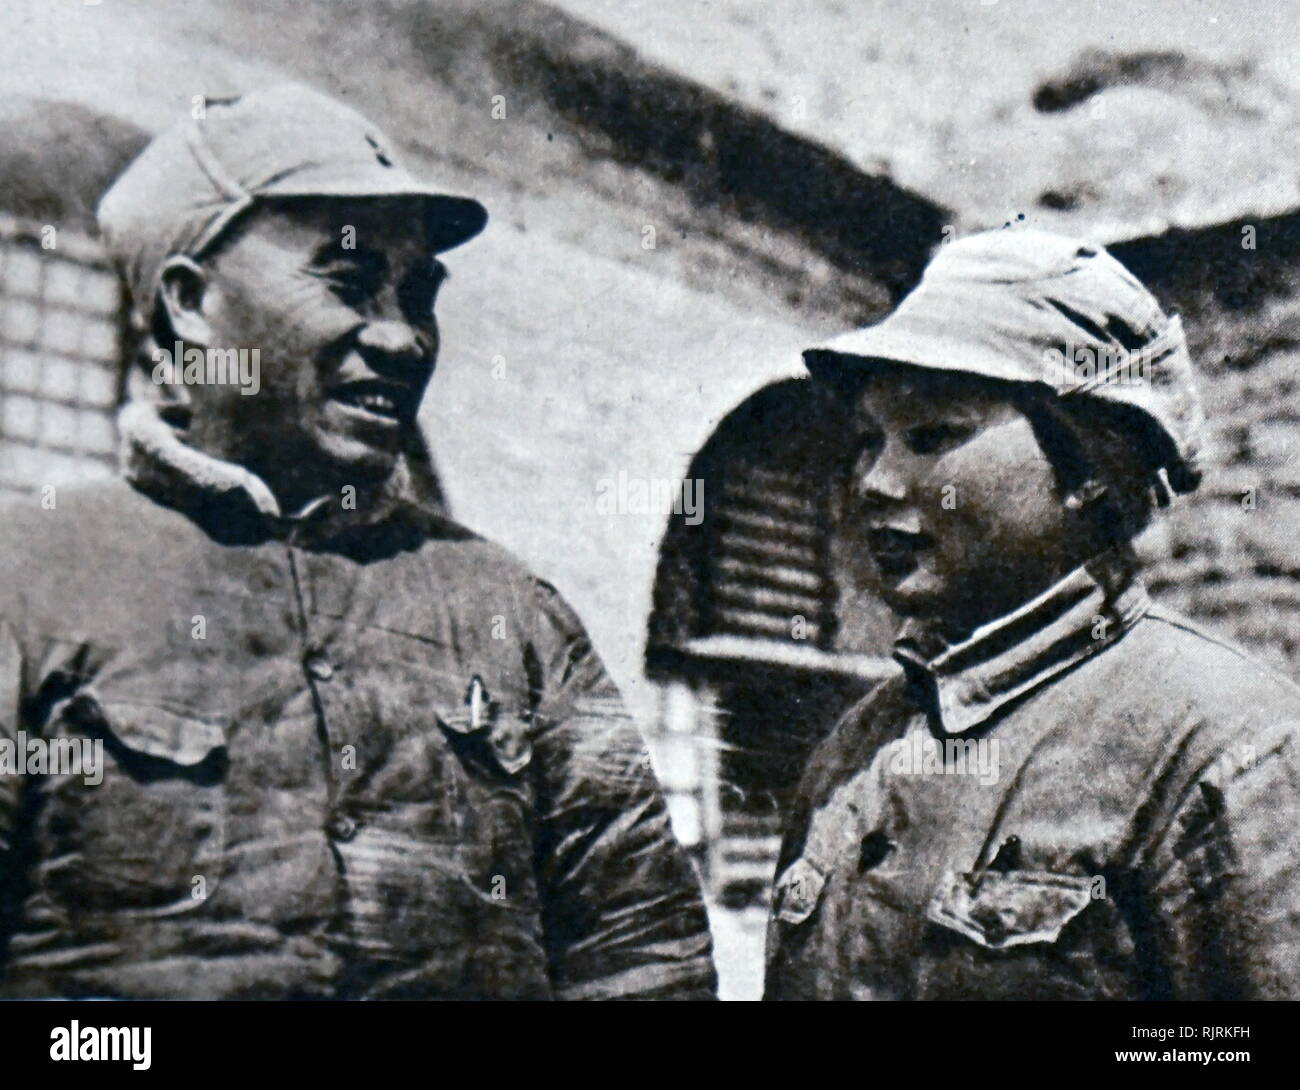 Zhu De (1886 - 6 juillet 1976), général chinois, le seigneur de guerre, homme politique, révolutionnaire et l'un des pionniers du parti communiste de Chine. On voit ici avec son épouse, Kang Keqing, dans les grottes de Yan'an au cours de la Longue Marche. Kang Keqing (1911 - 1992), était un homme politique de la République populaire de Chine Banque D'Images